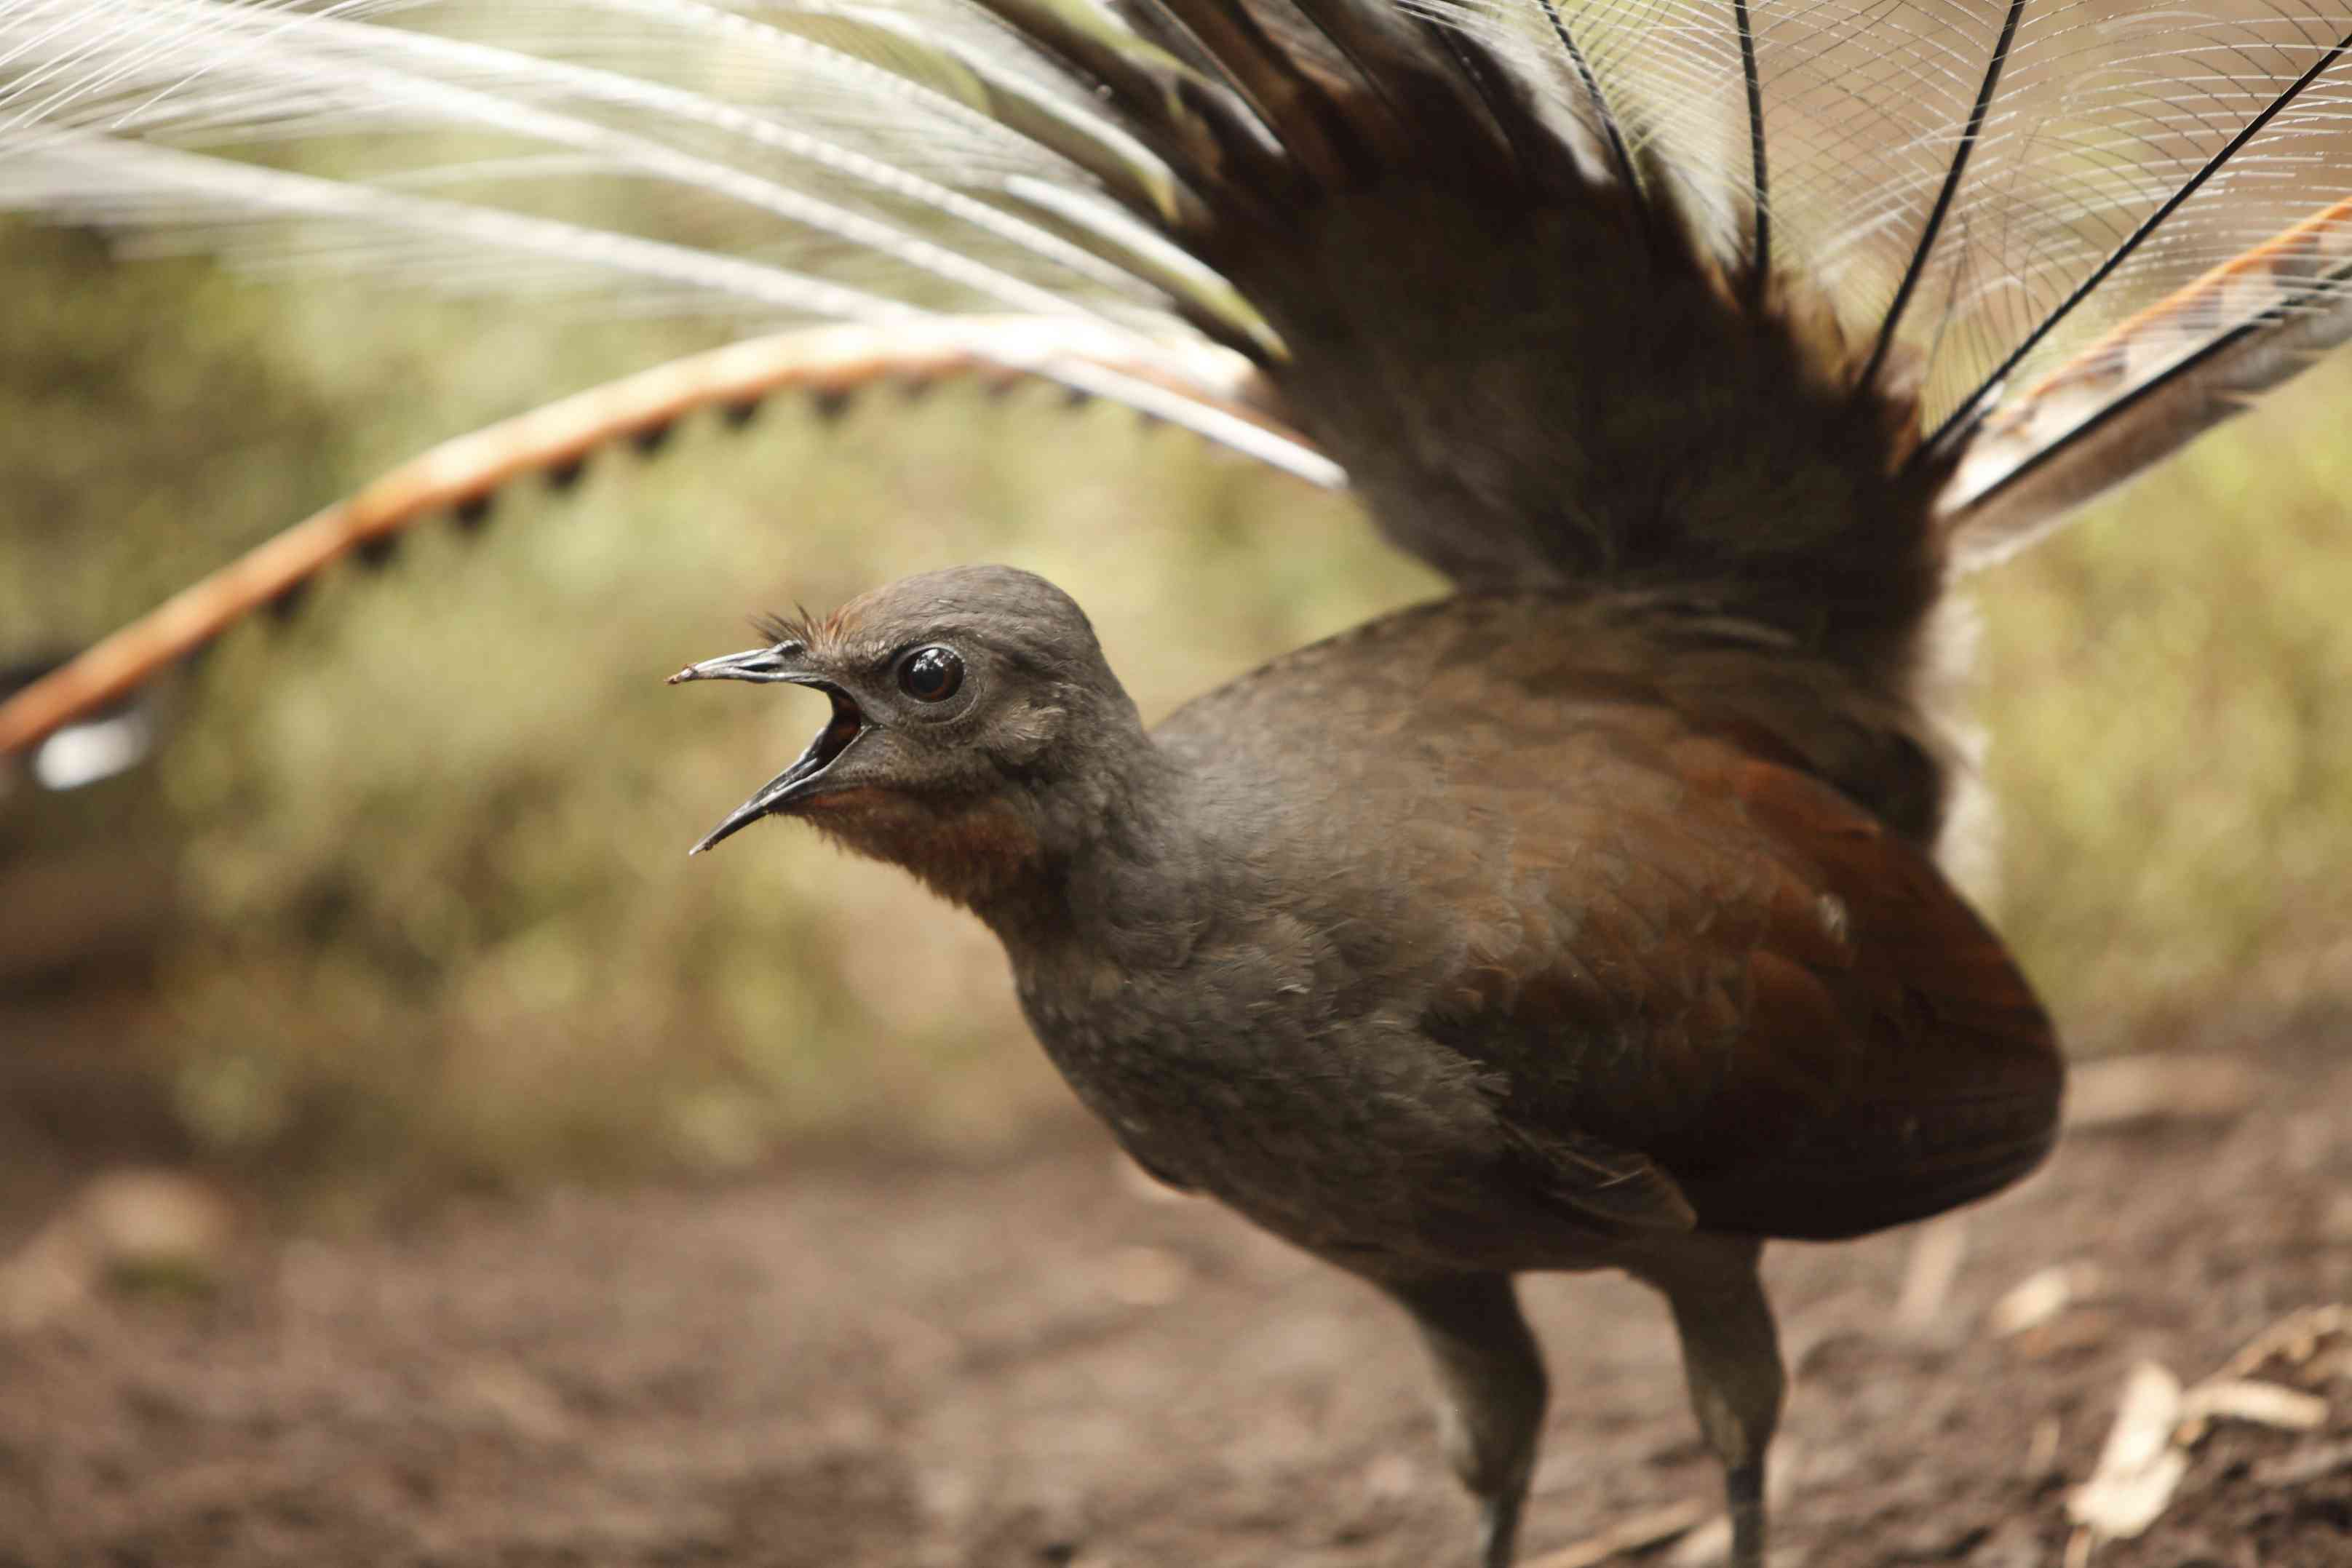 棕色的大鸟长尾和一个开放的喙